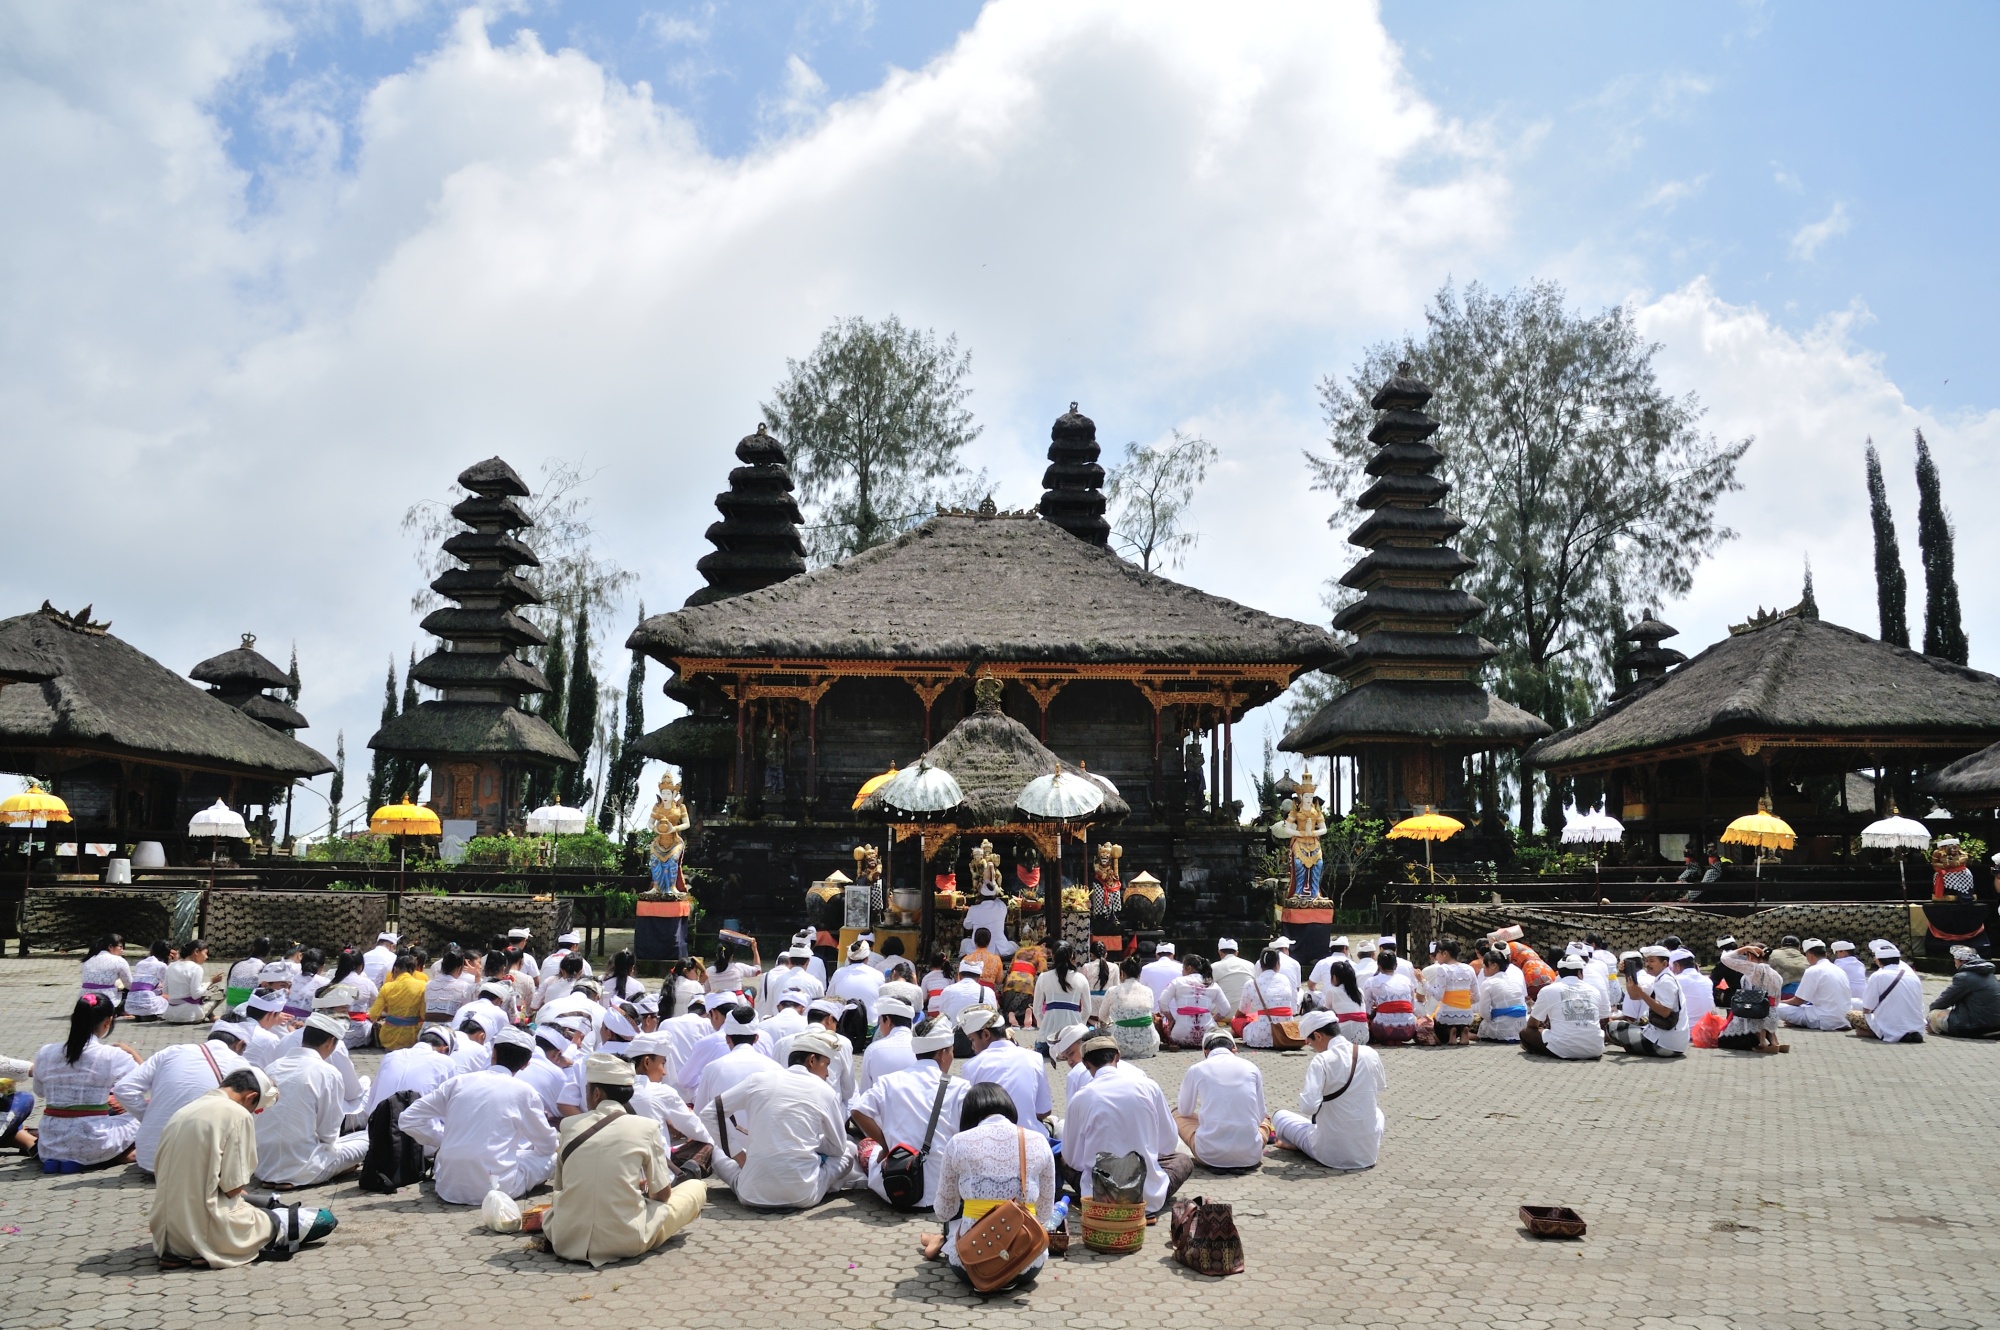 バリ島内ではバリ・ヒンドゥー教の総本山「ブサキ寺院」に次ぐ格式の高い寺院として人々から厚く信仰されている。